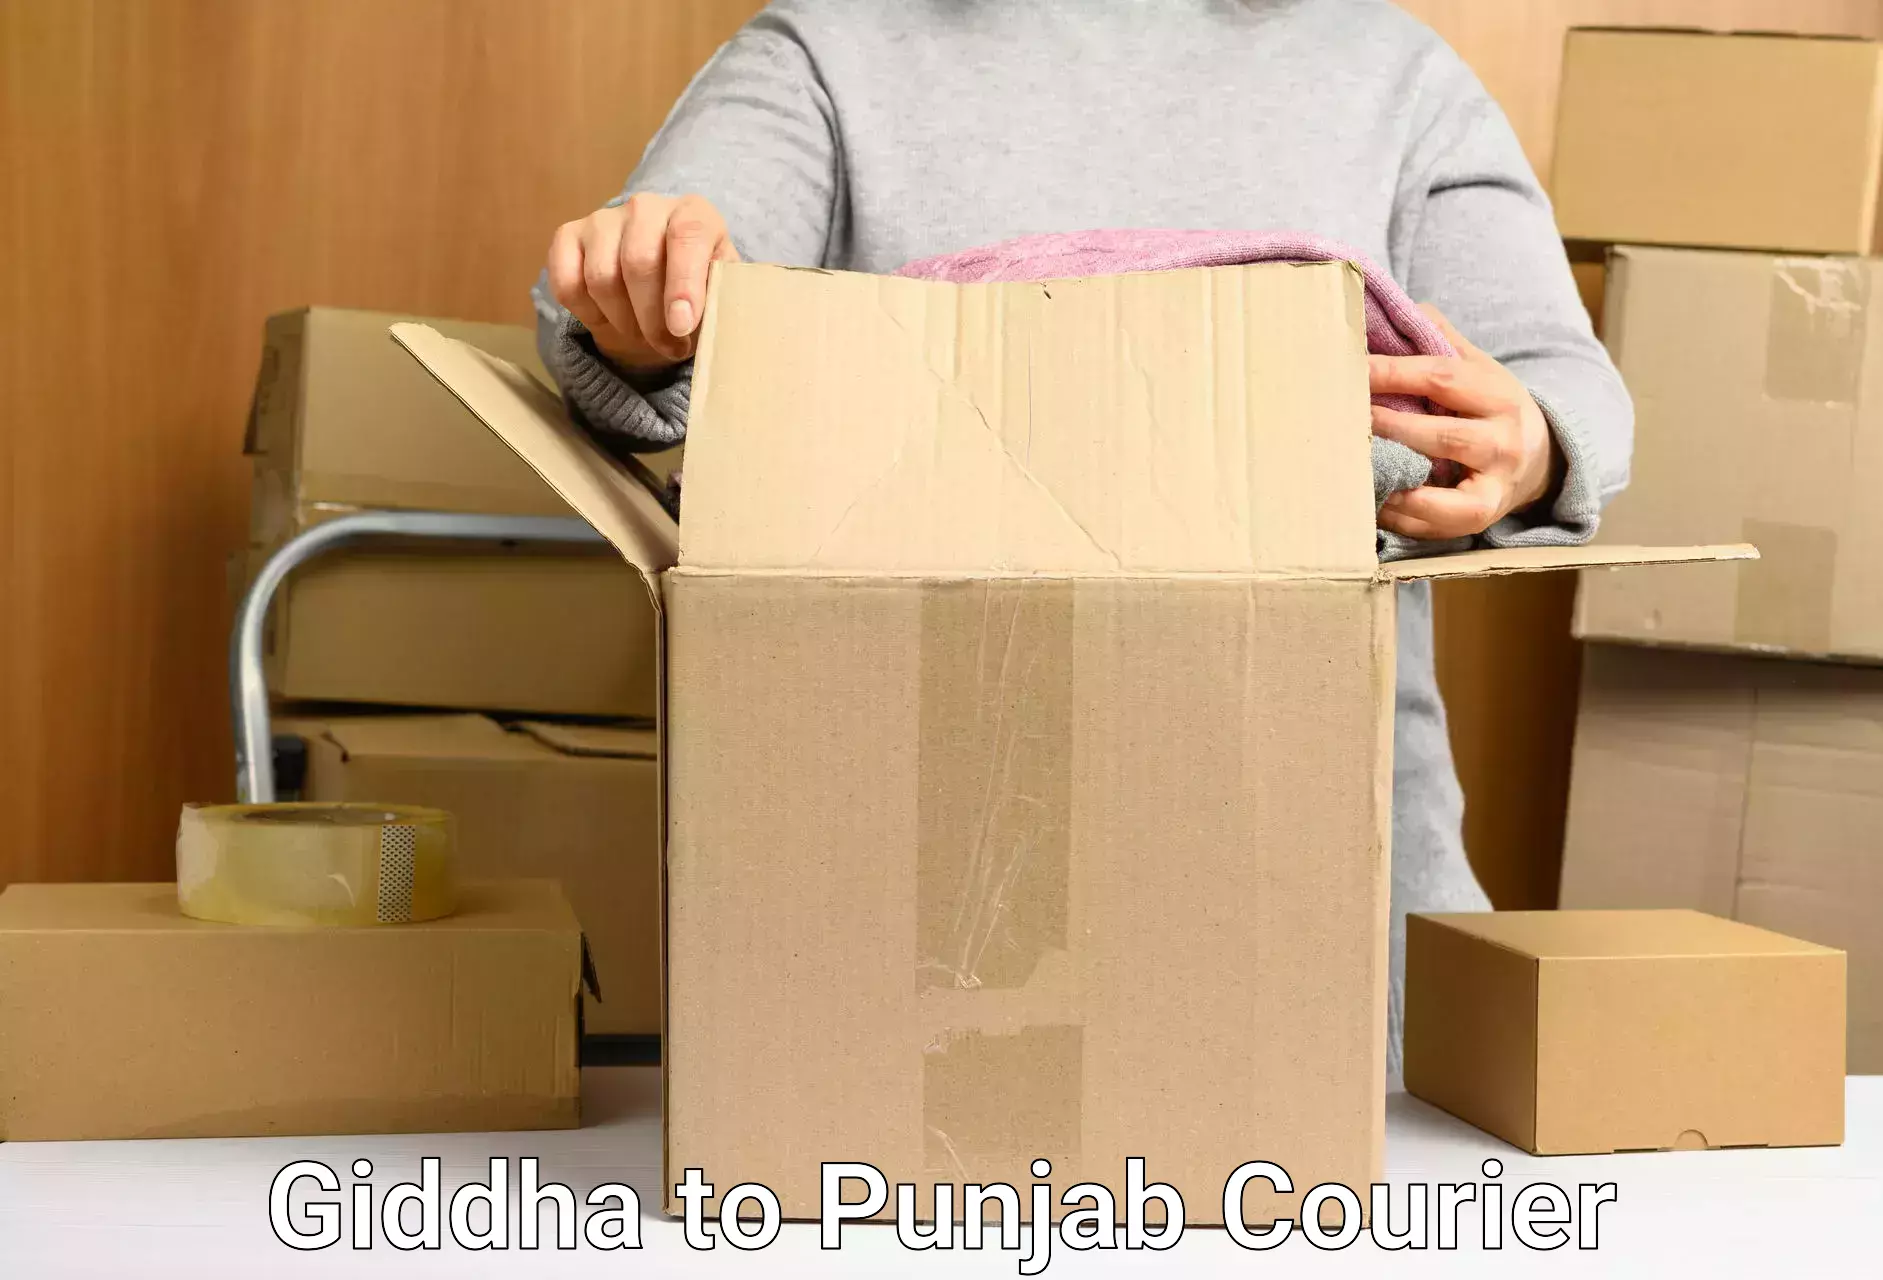 Secure packaging Giddha to Punjab